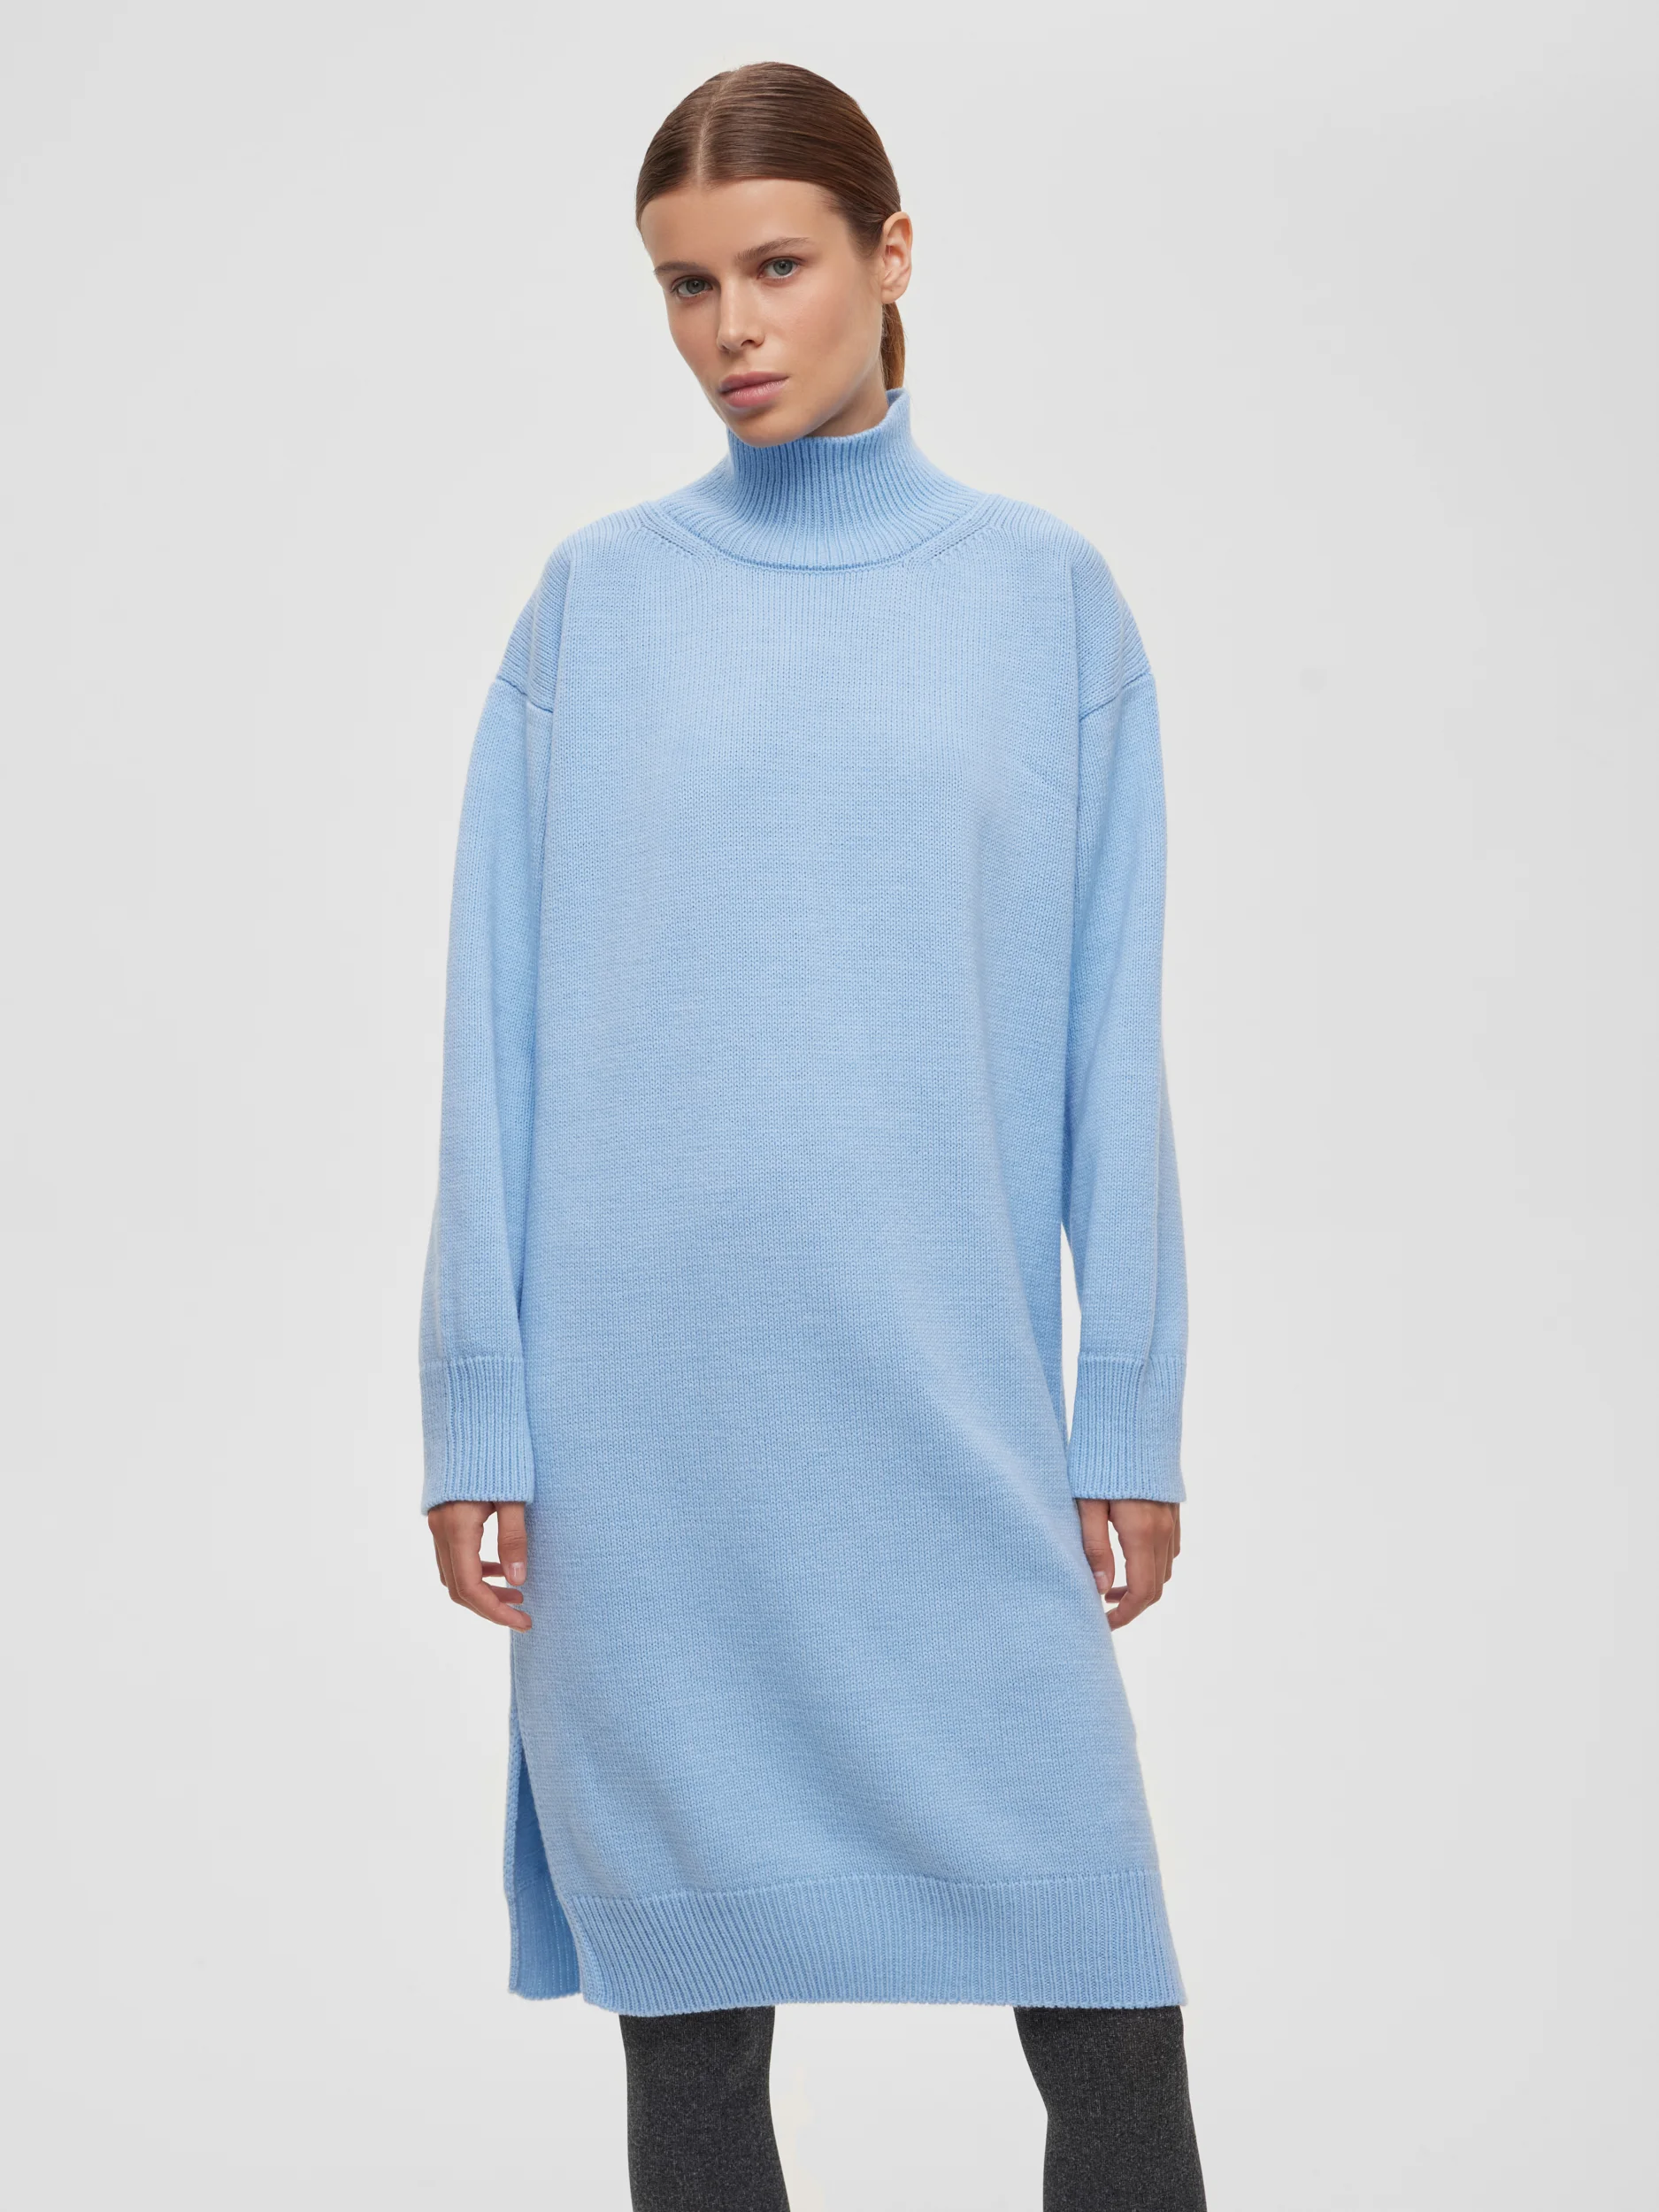 Платье свободного кроя вязаное, цвет – голубой цена и фото